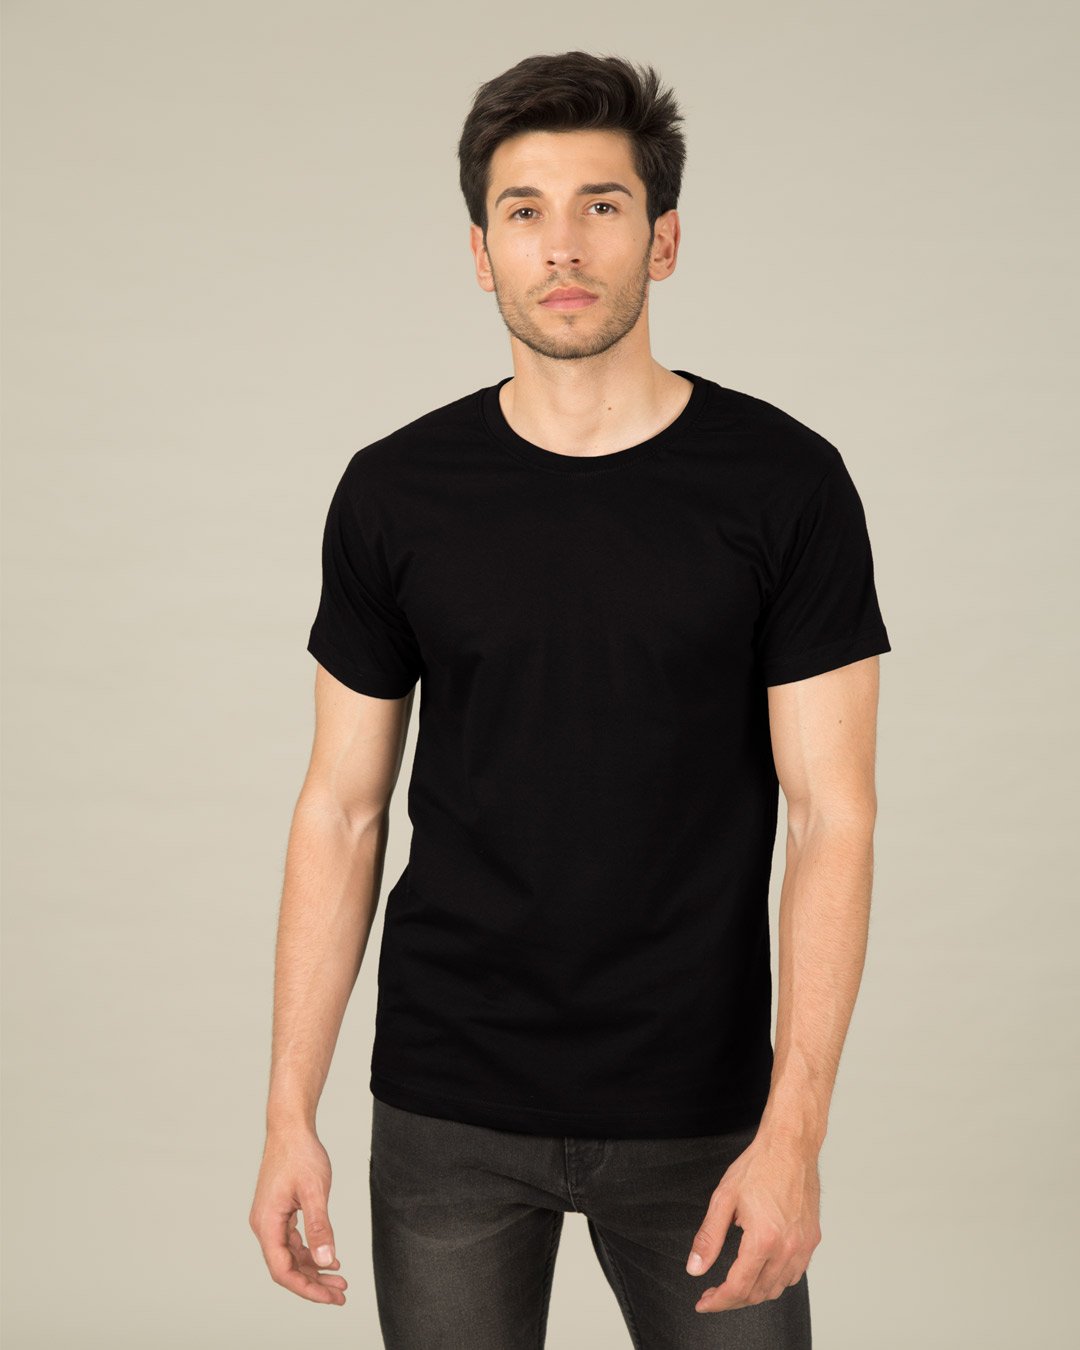 jet-black-half-sleeve-t-shirt-men-s-plain-t-shirts-106-1560838106 for him Jet Black